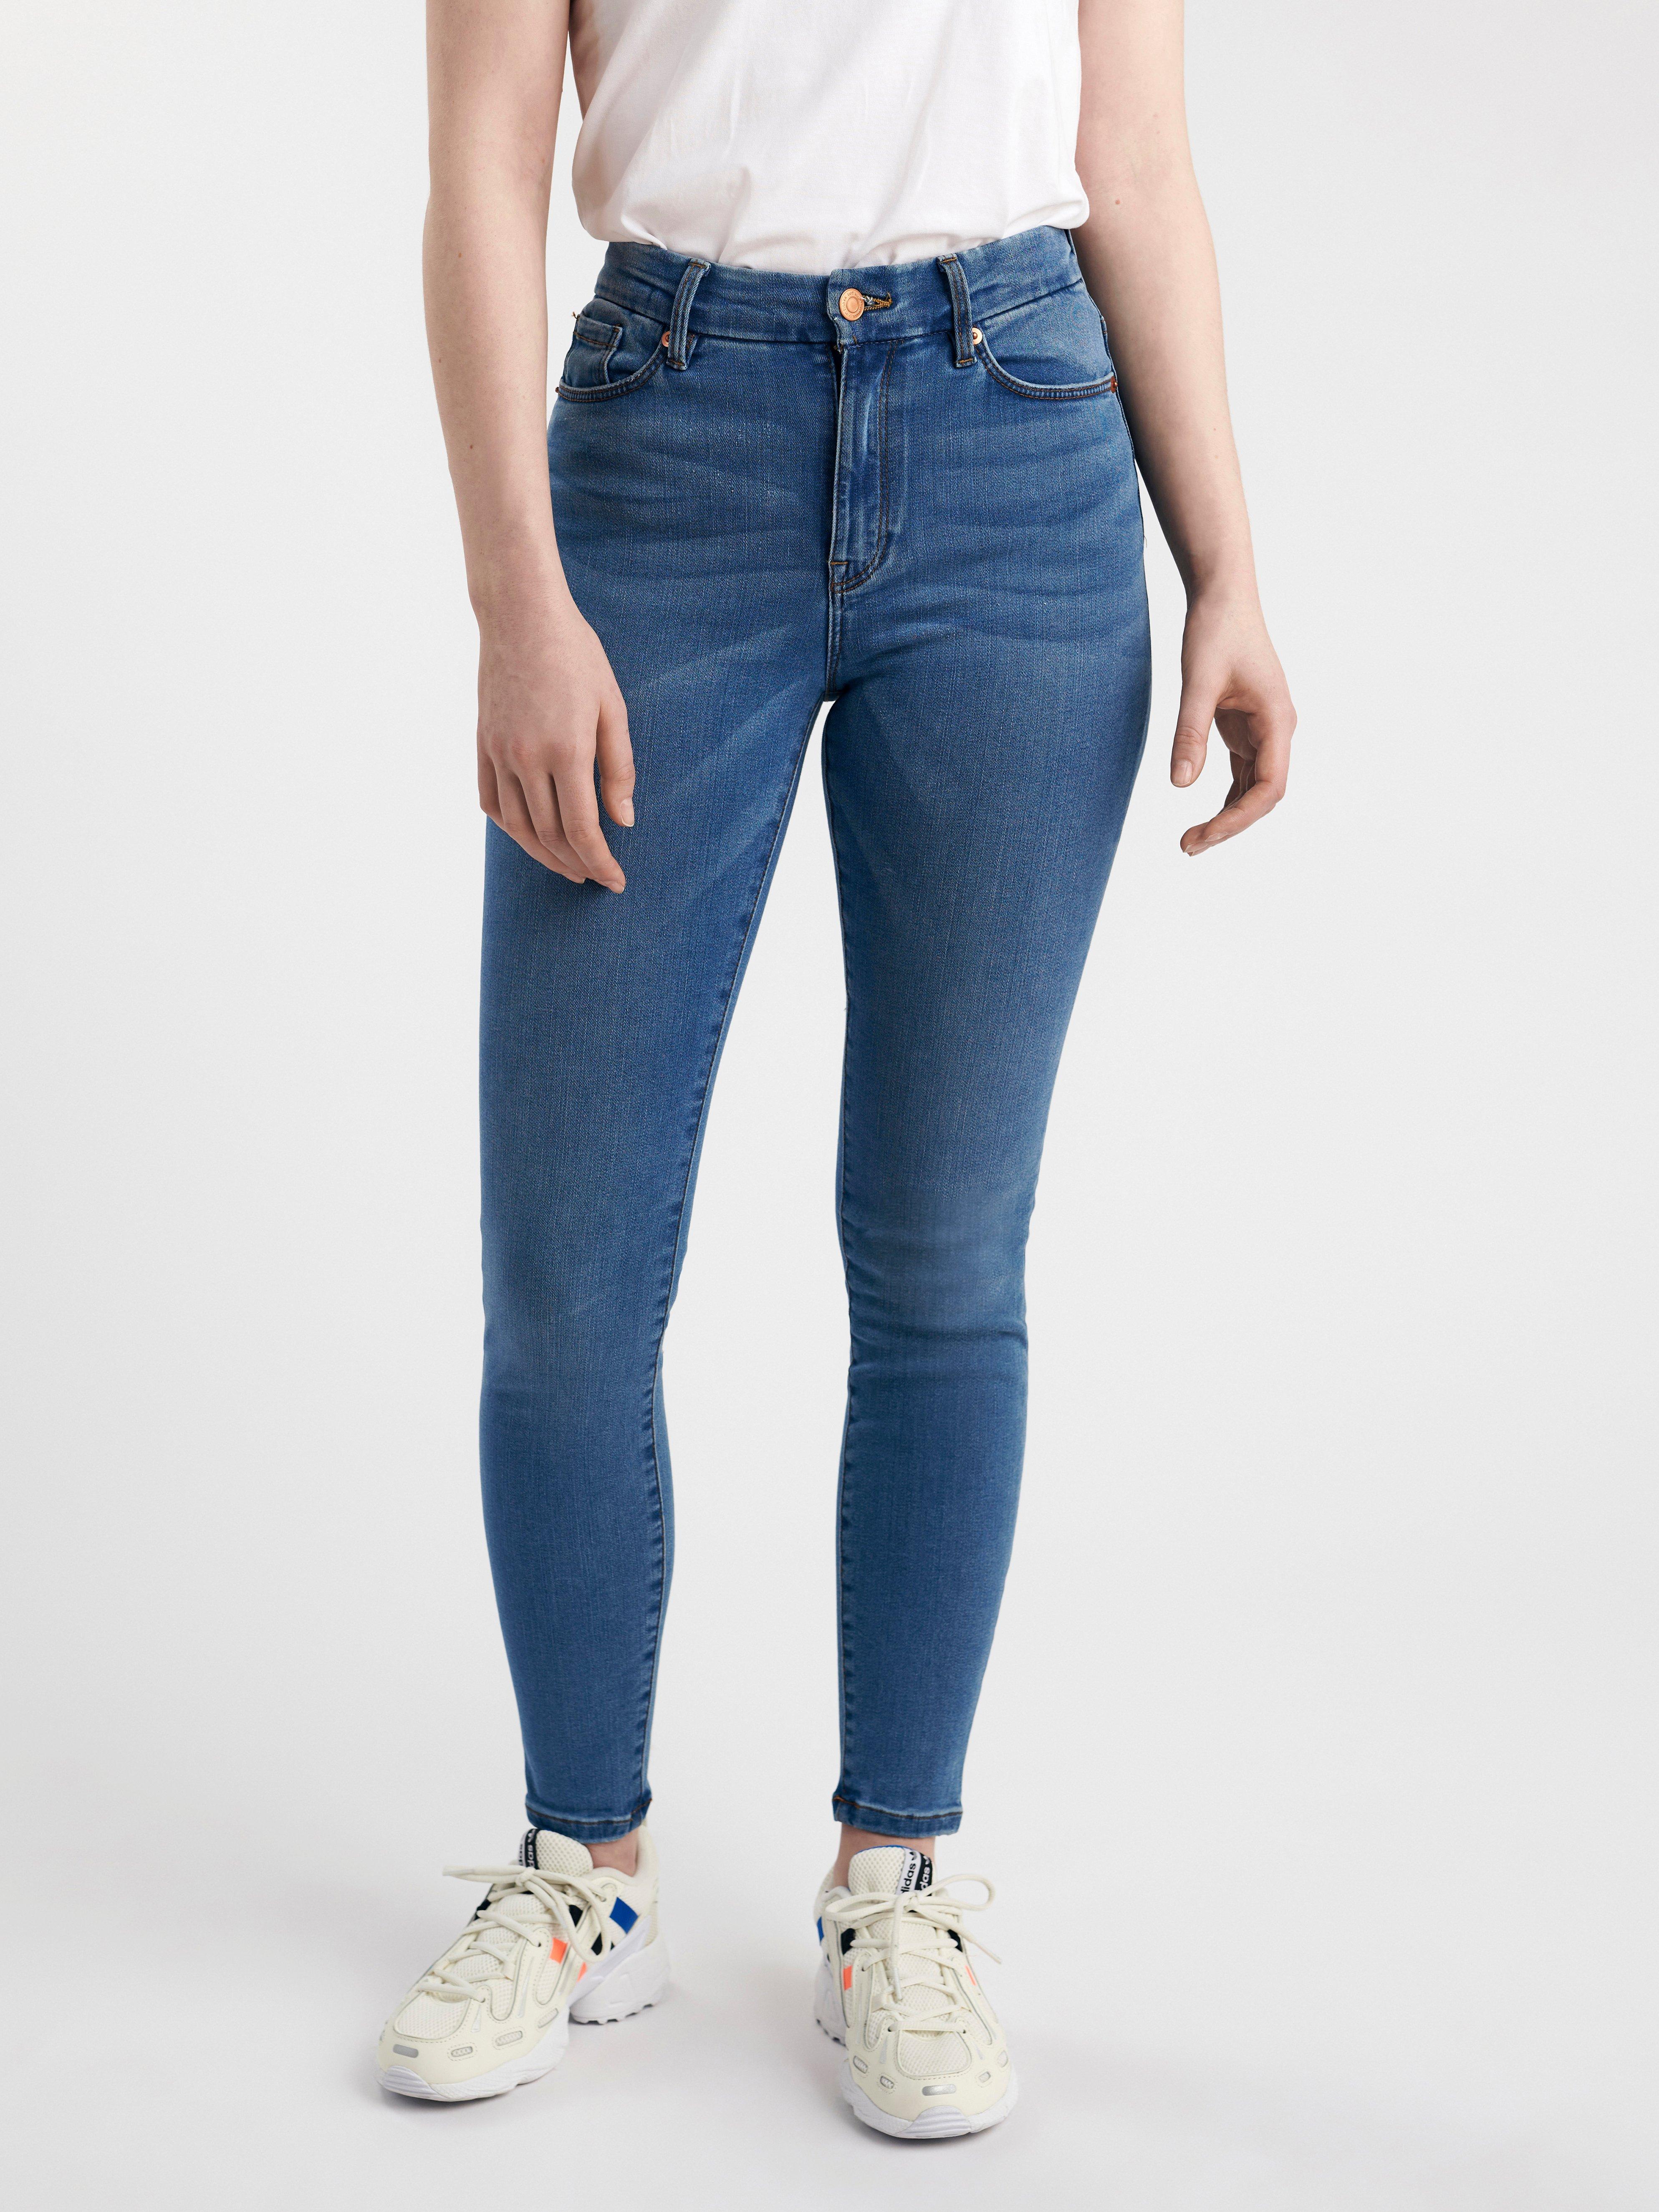 CLARA Curve super stretch jeans with 